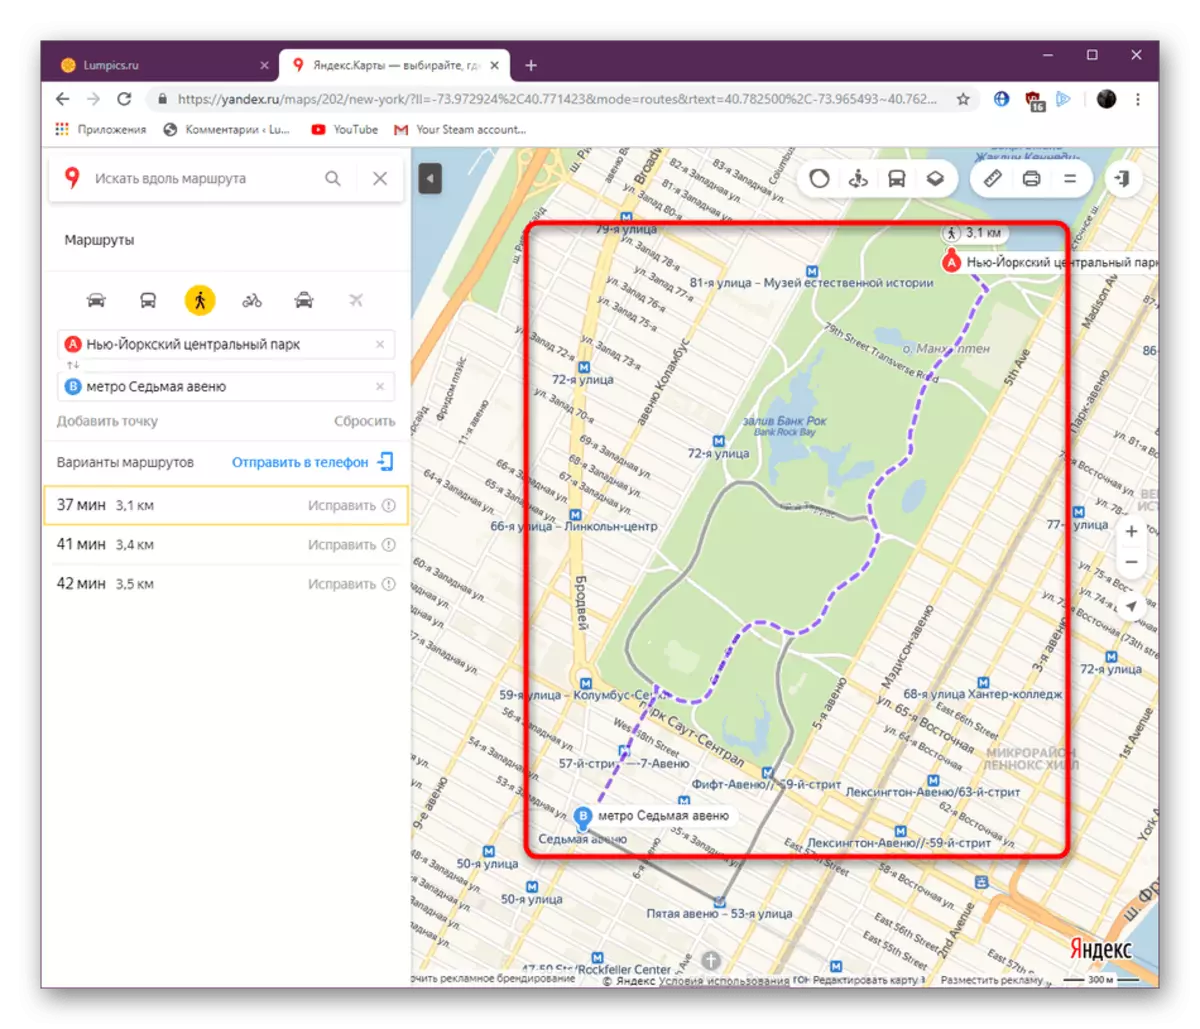 Zobraziť cestu pre chodcov na Yandex.Maps